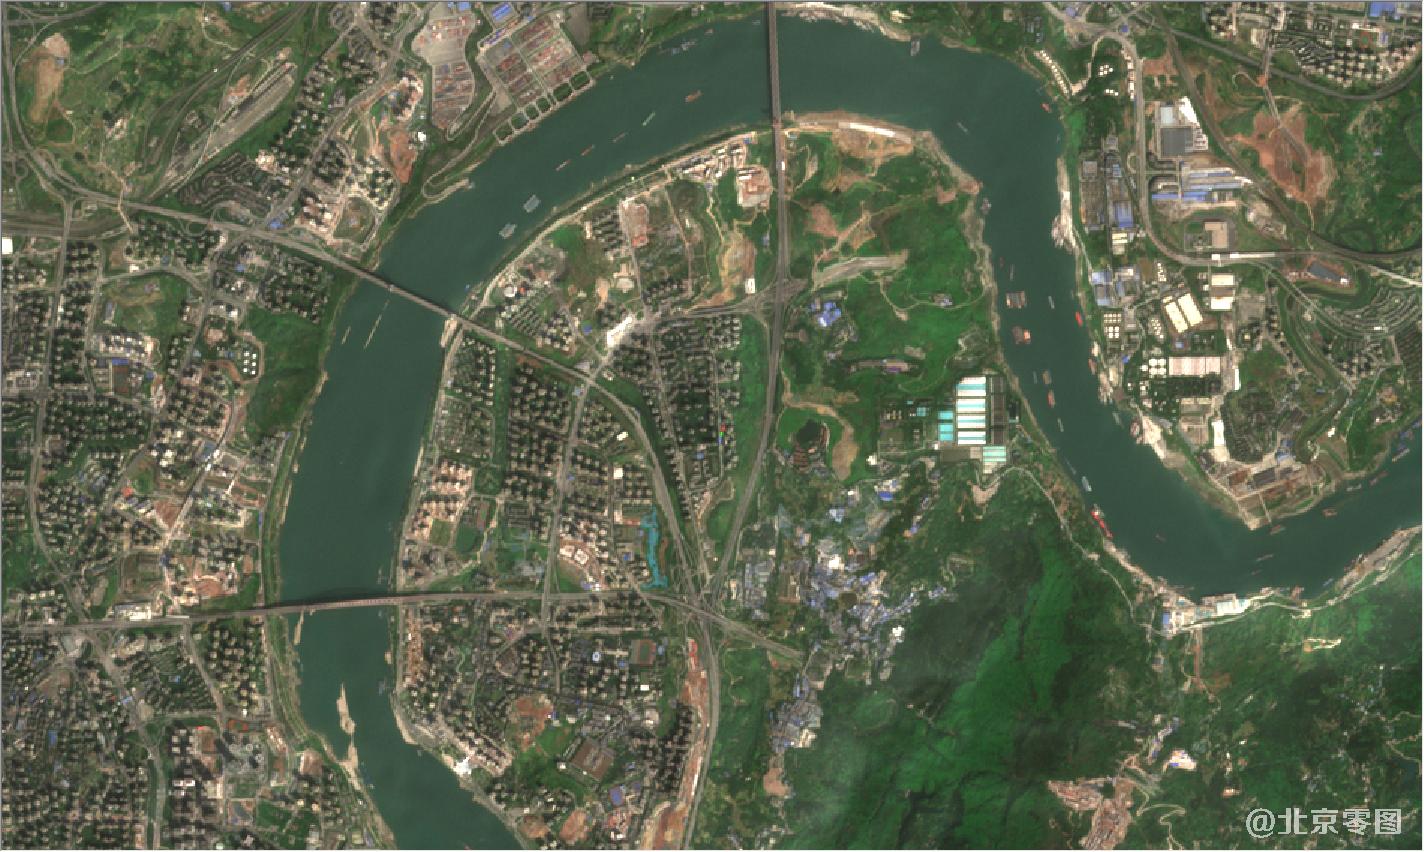 地图由 高频监测卫星拍摄于 2021年3月24日,如需要 购买重庆市高清